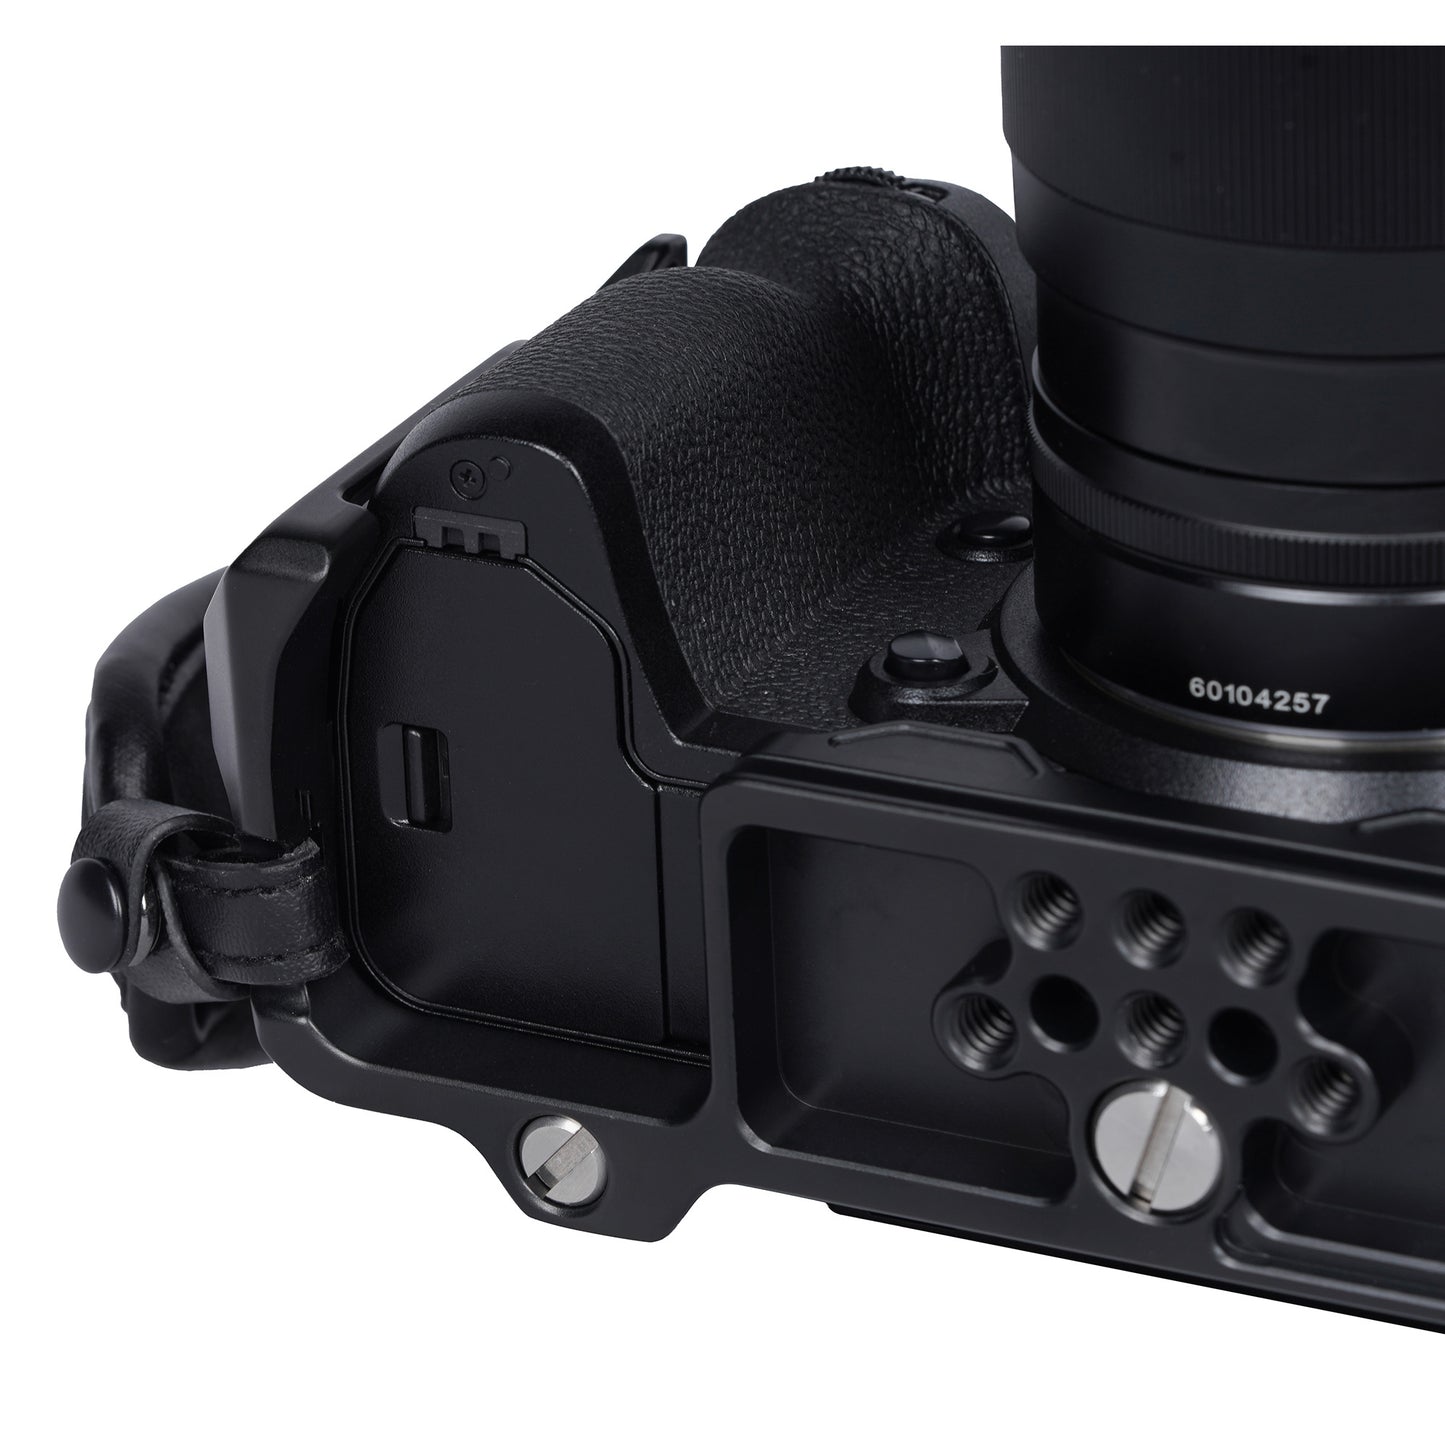 SIRUI SCH-X-H2/H2S Kamera Cage mit Top-Griff for FUJIFILM X-H2 und X-H2S